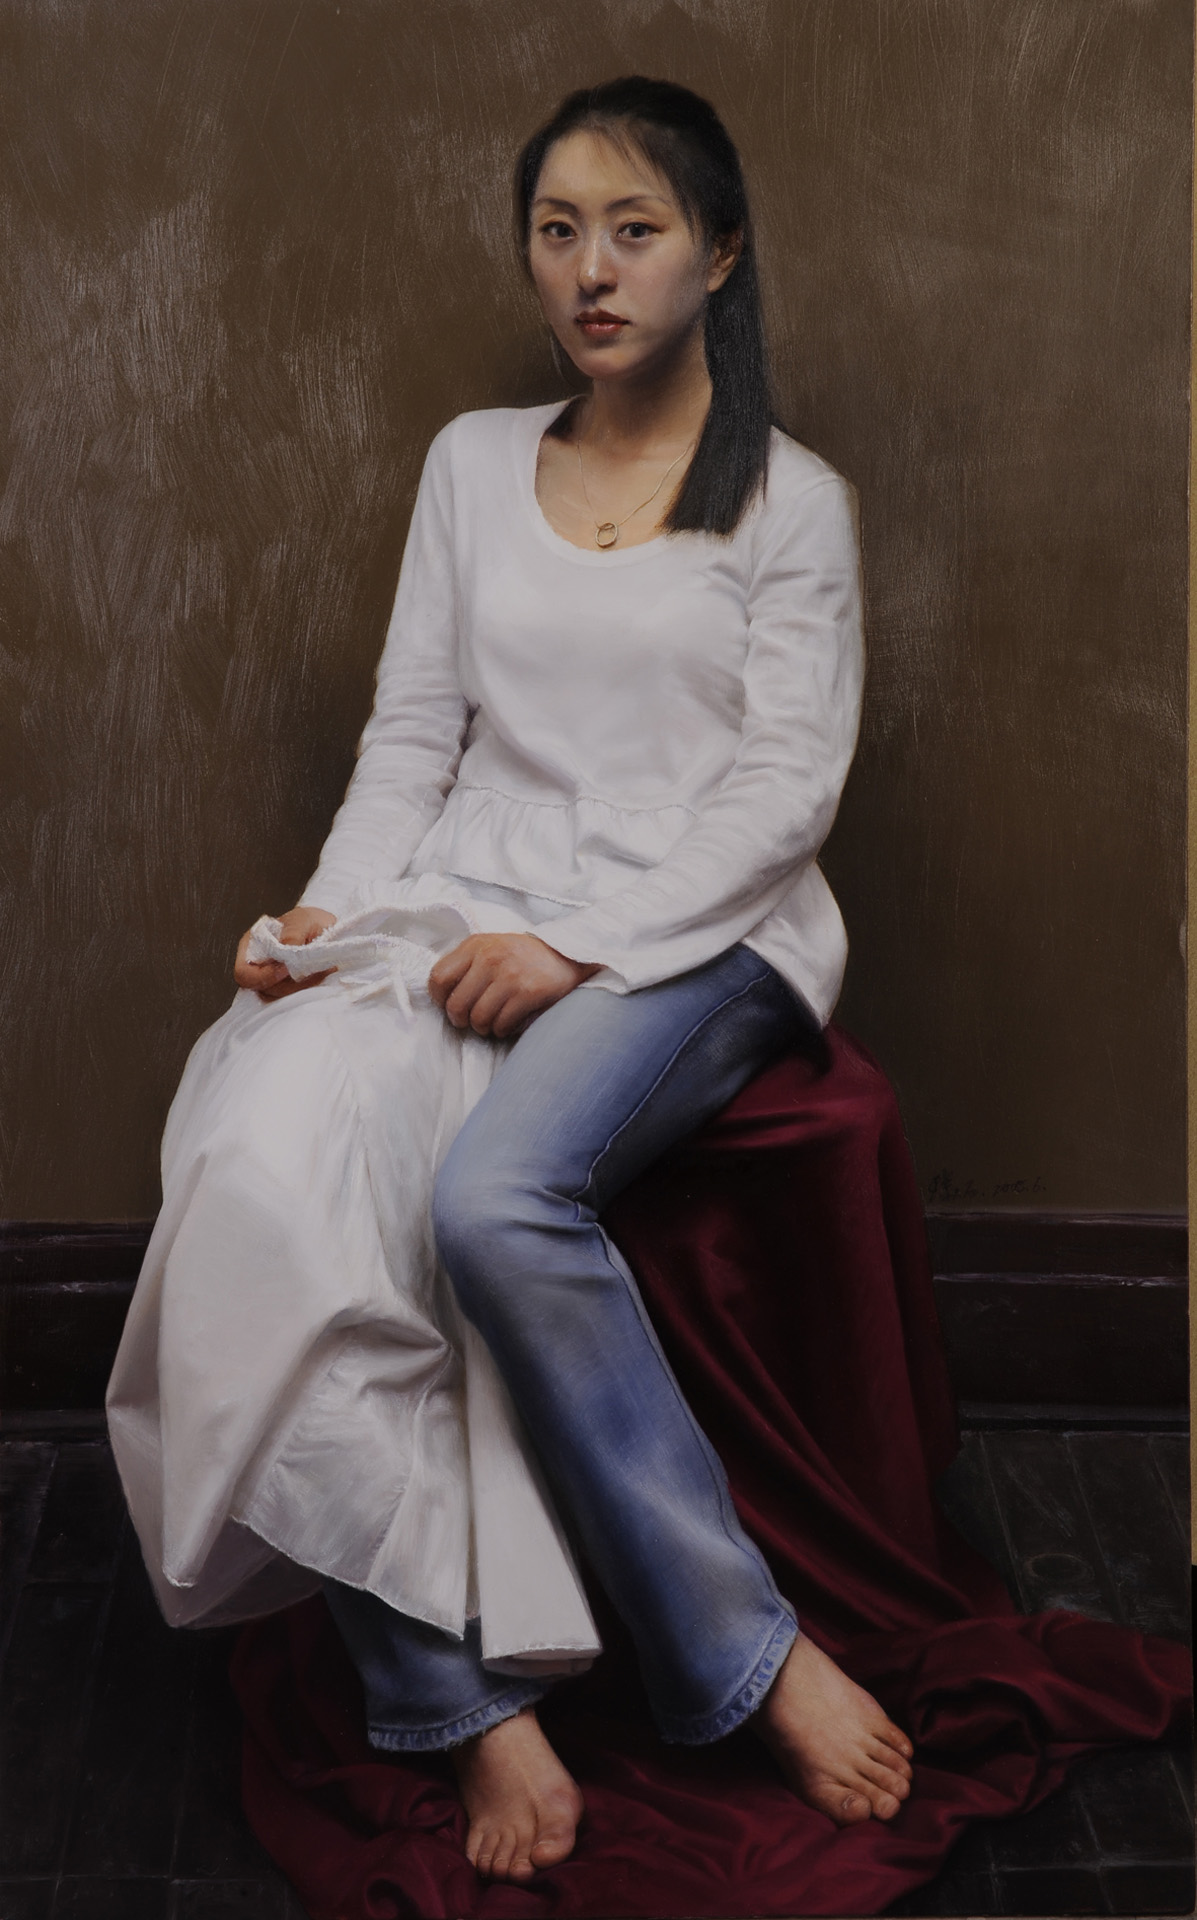 Bức “Tân trang” của Diệc Chân, sơn dầu trên vải, 80x50cm, tác phẩm đạt huy chương bạc trong “Cuộc thi vẽ tranh sơn dầu tả thực nhân vật người Hoa toàn thế giới” mùa đầu tiên vào năm 2008. (Ảnh: Đài truyền hình NTD)